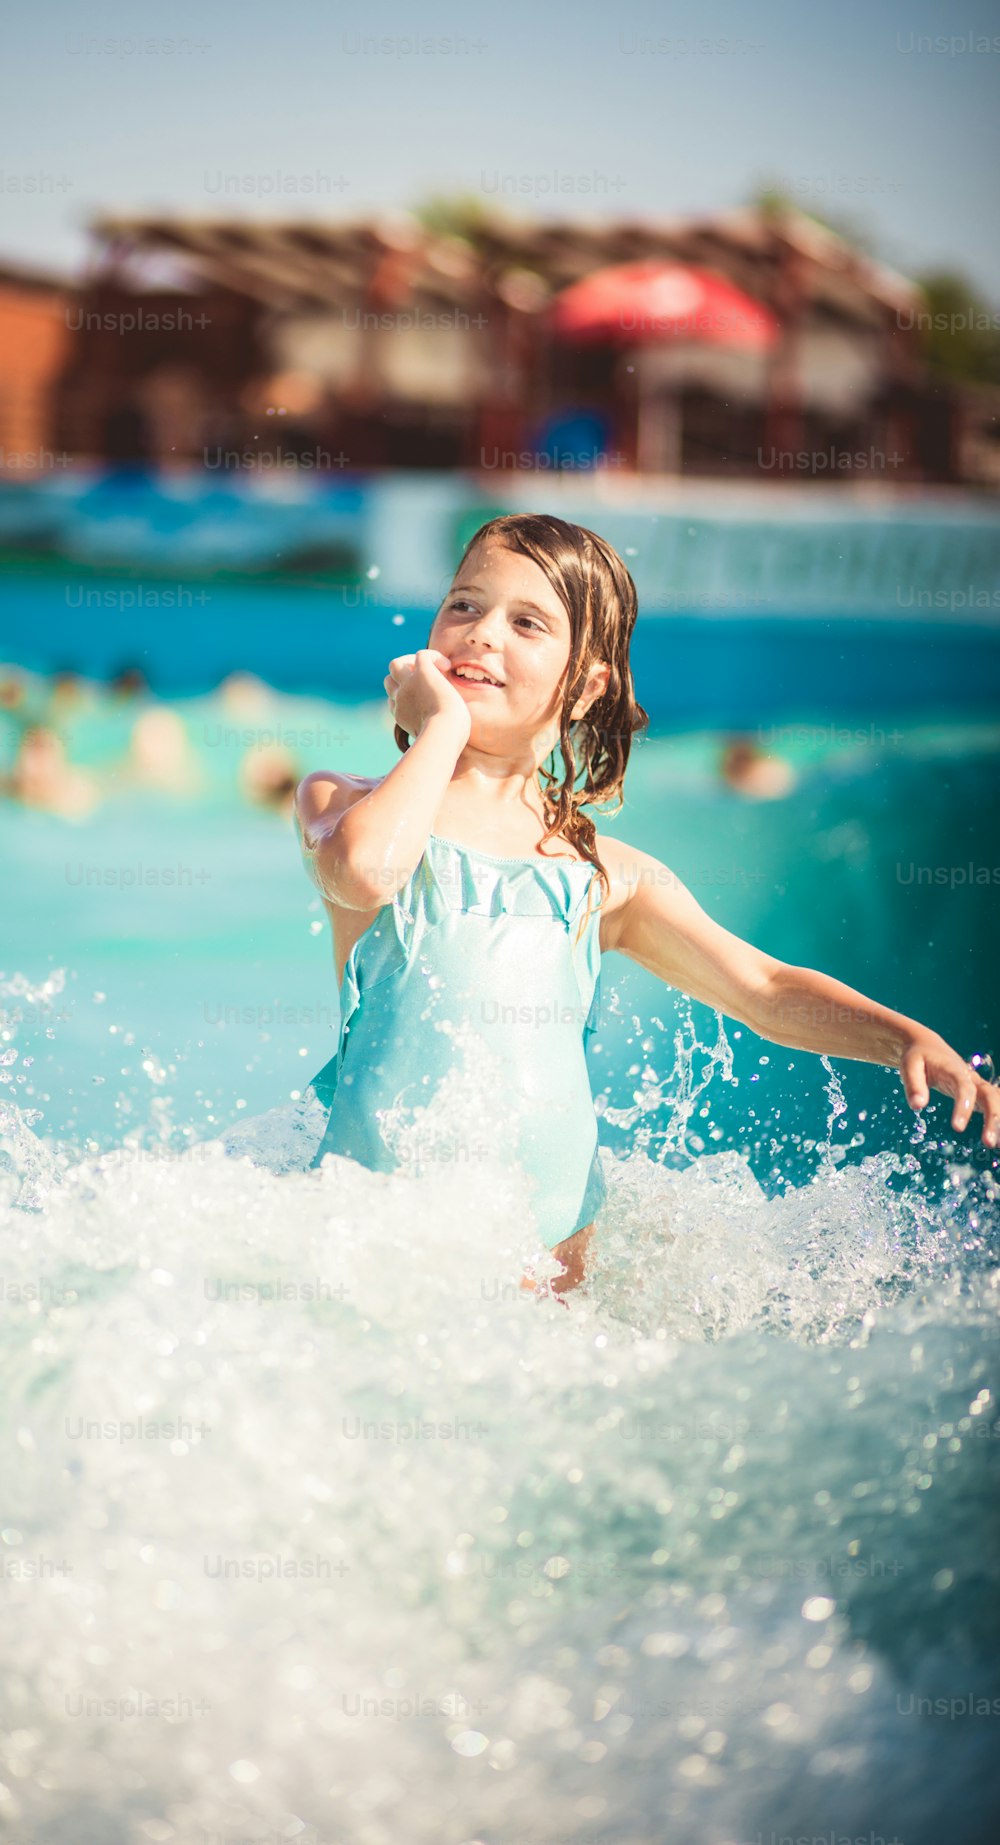 Waves é tão divertido. Criança se divertindo na piscina.